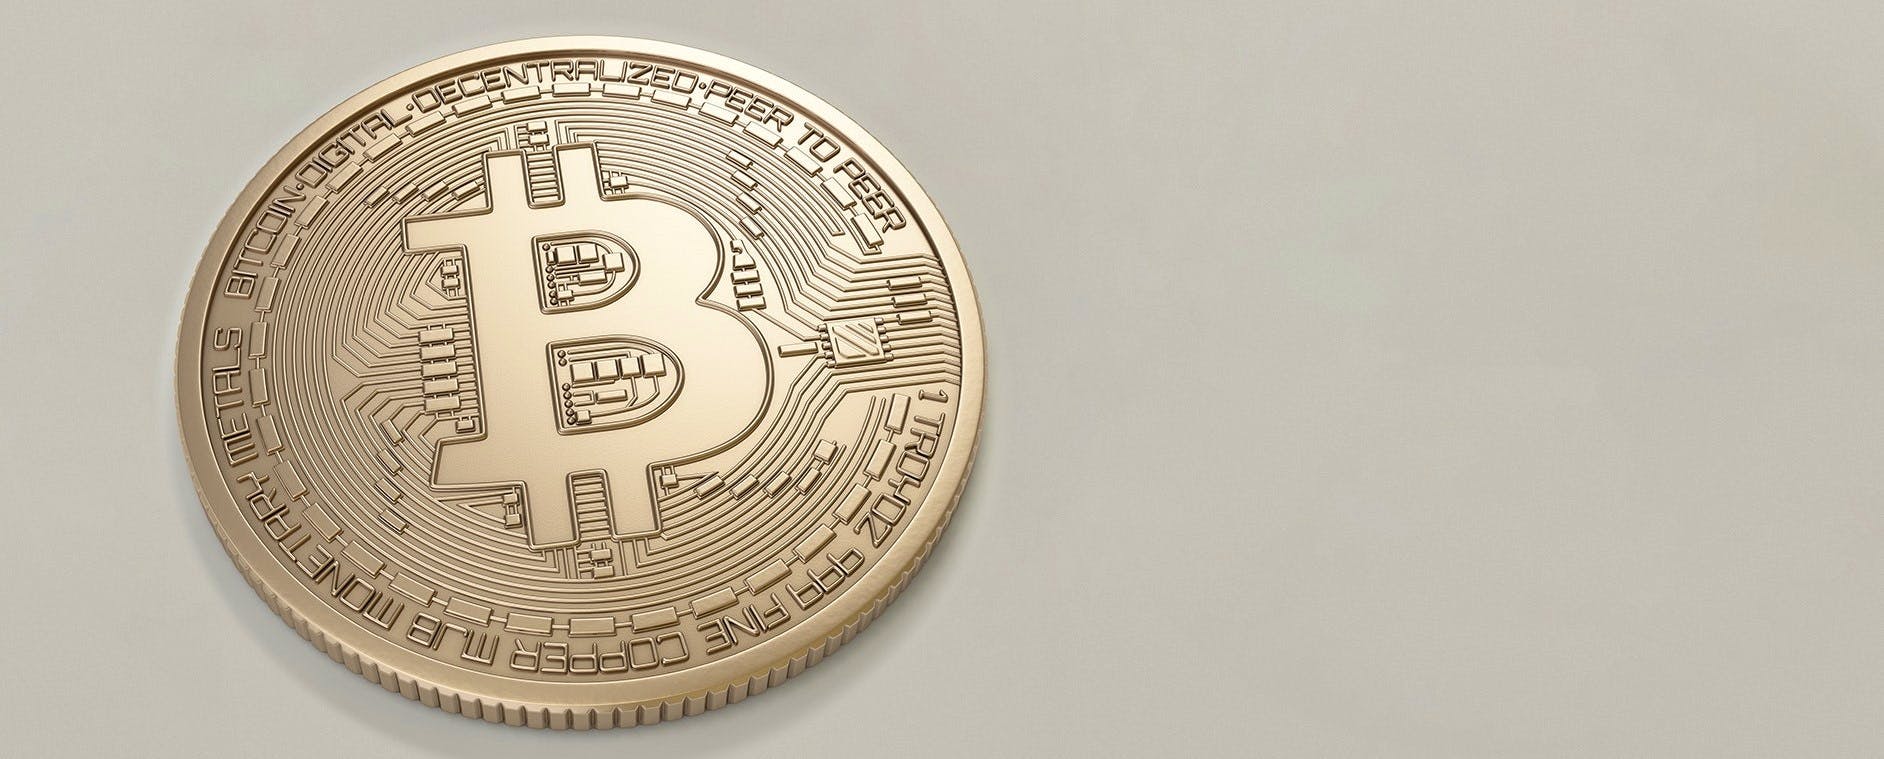 Waarom en waar kan ik bitcoins kopen?